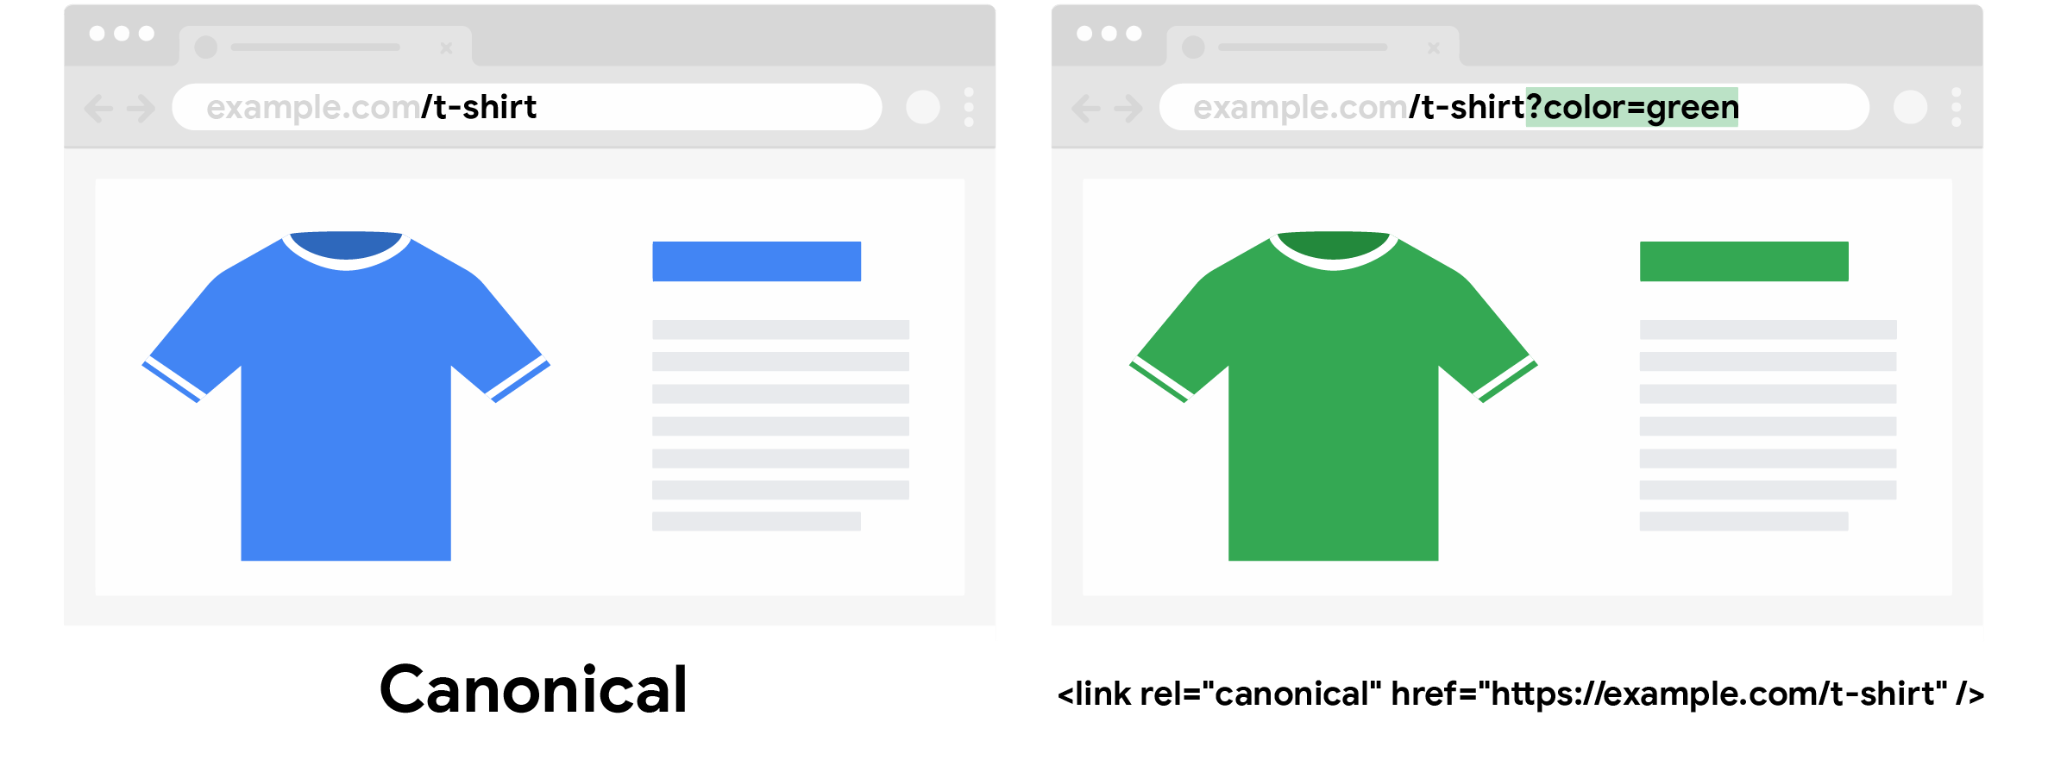 कैननिकल यूआरएल वाली नीली टी-शर्ट, जिसमें रंग वाला क्वेरी पैरामीटर नहीं है और बिना कैननिकल यूआरएल वाली हरी टी-शर्ट, जिसमें रंग वाला क्वेरी पैरामीटर शामिल है, दोनों के बारे में बताया गया है